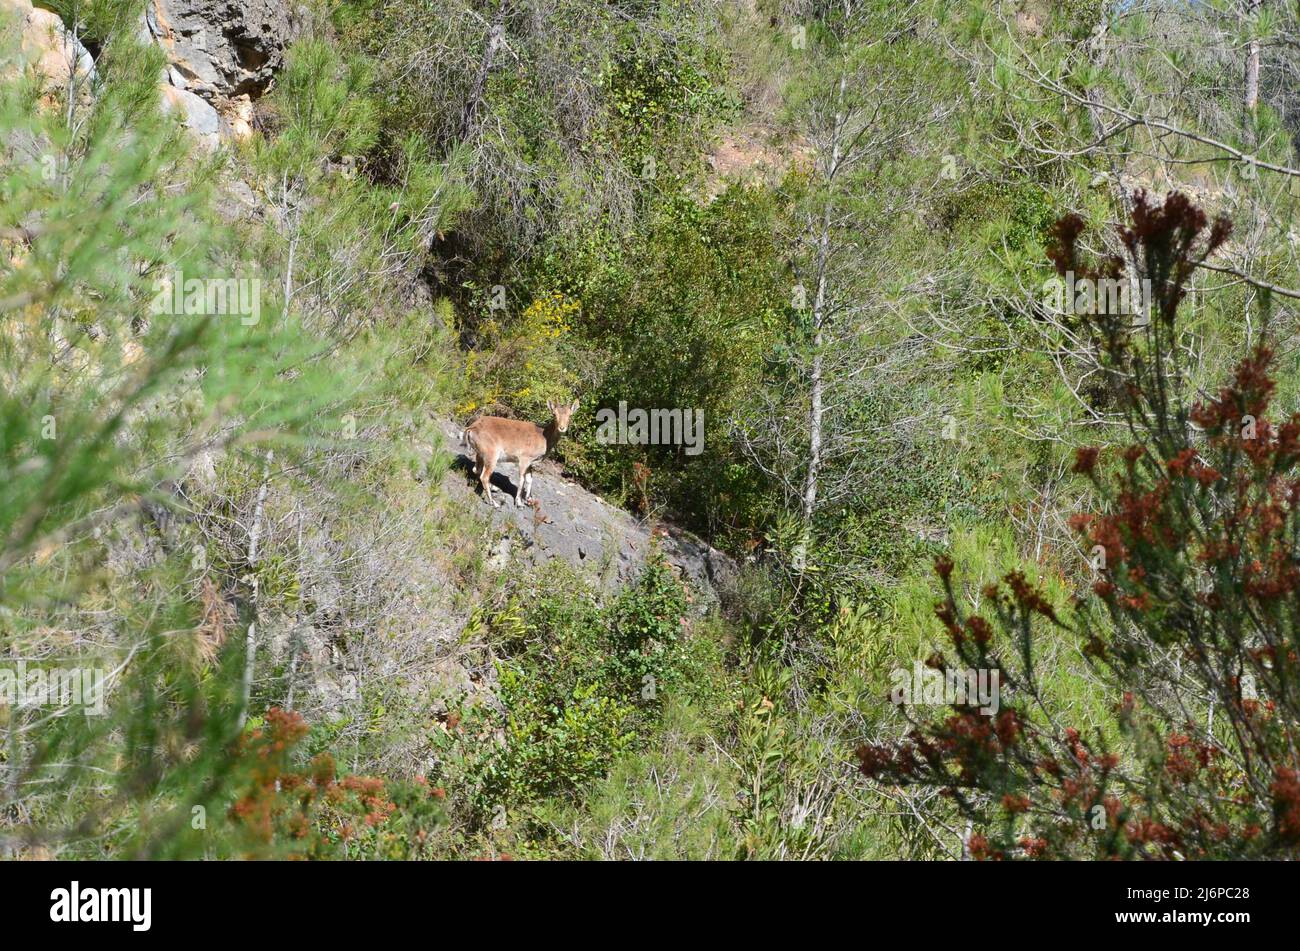 Un joven ibex ibérico (Capra pyrenaica hispanica) en las montañas del macizo de Caroig, Comunidad Valenciana (este de España) Foto de stock